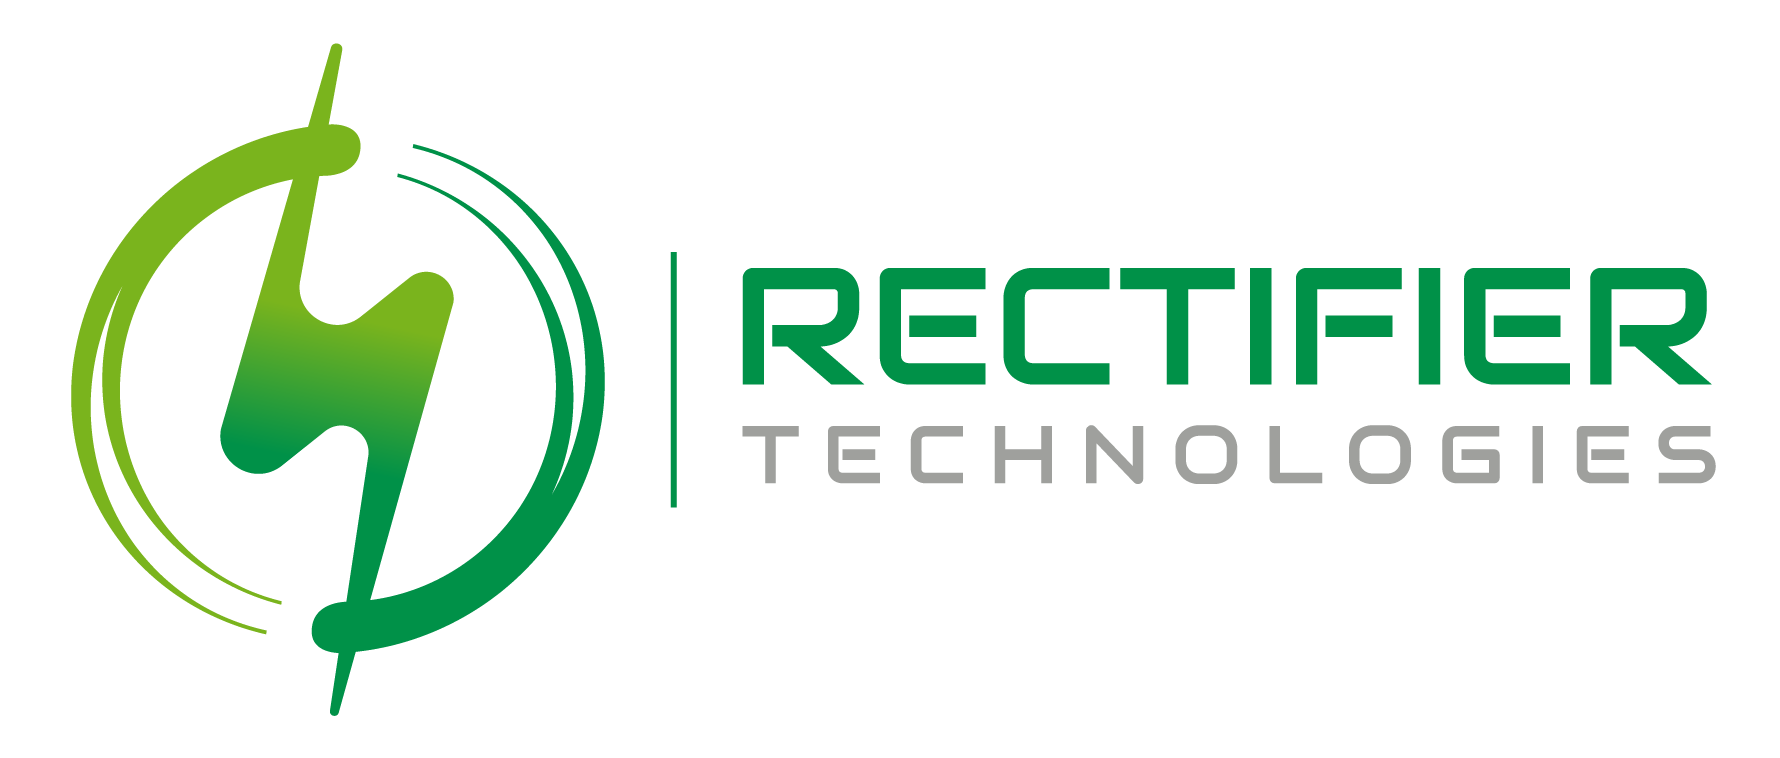 Speaker: Rectifier Technologies